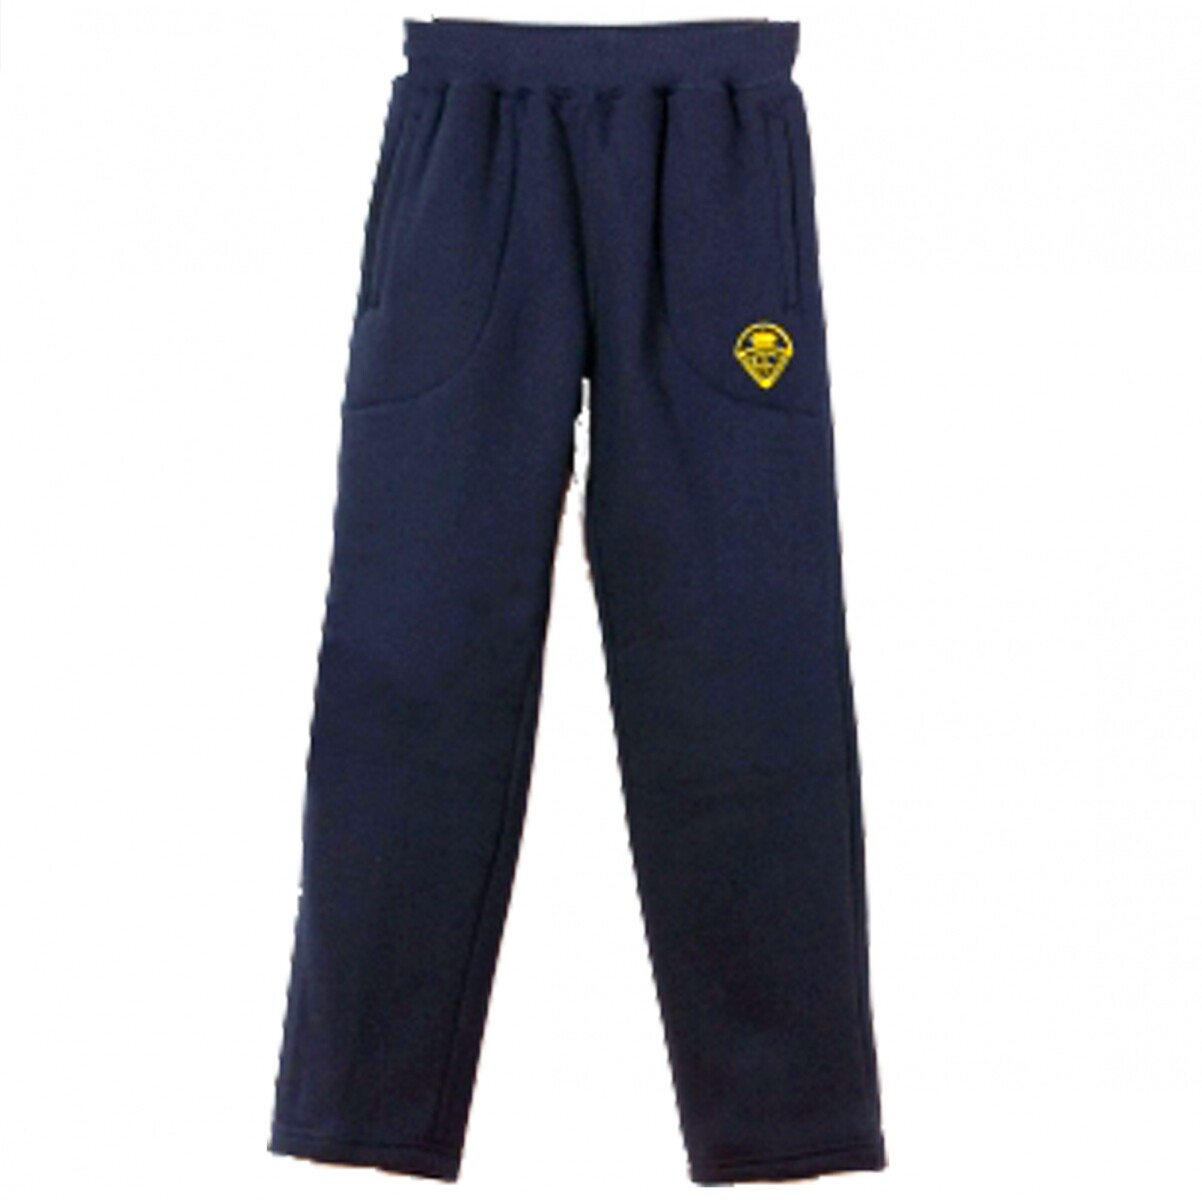 Pantalón deportivo Instituto Crandon - Navy 